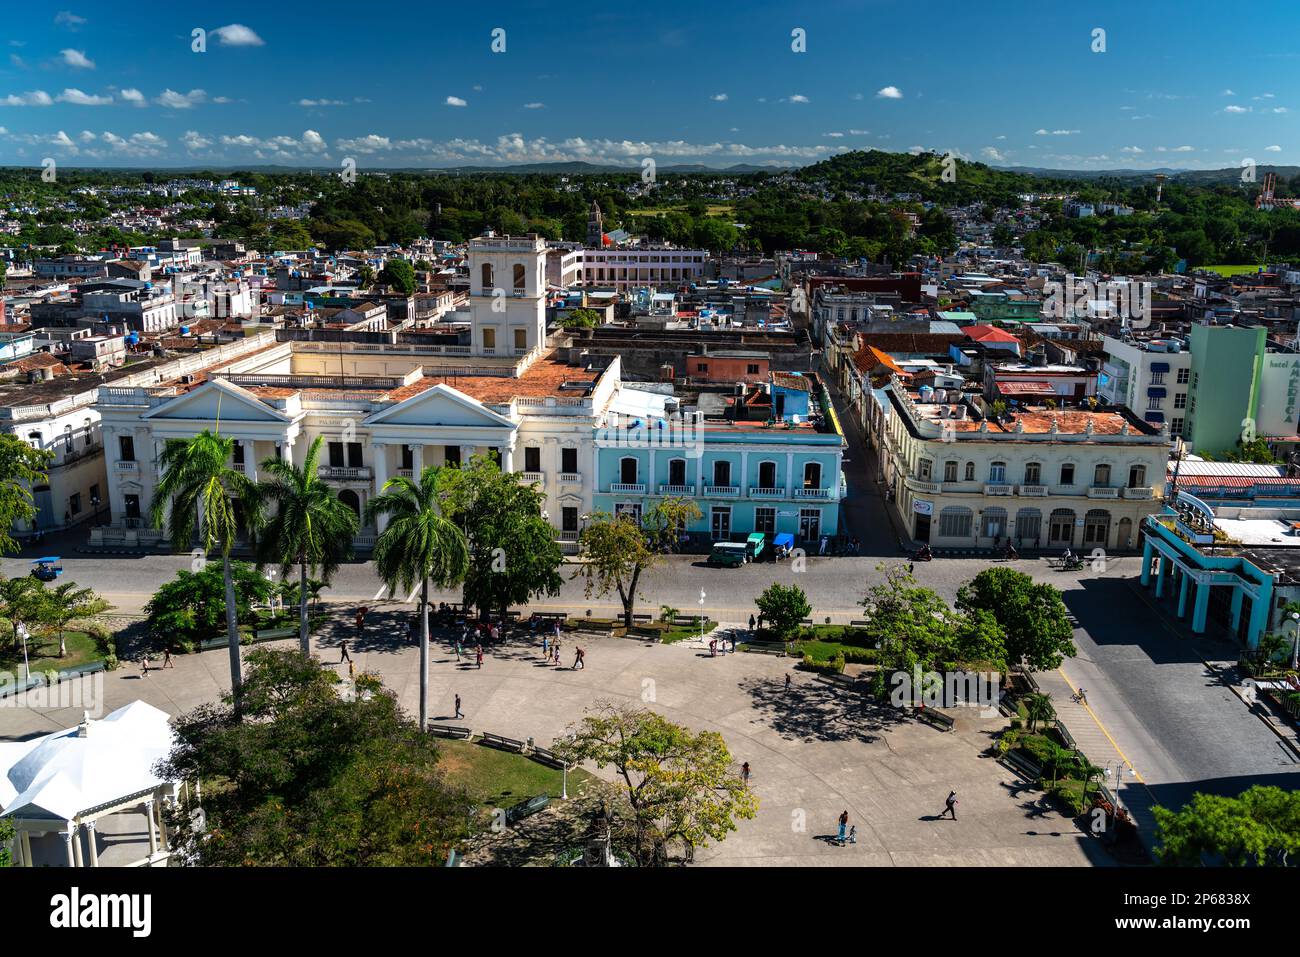 Vue aérienne de la place principale de Santa Clara, Cuba, Antilles, Caraïbes, Amérique centrale Banque D'Images